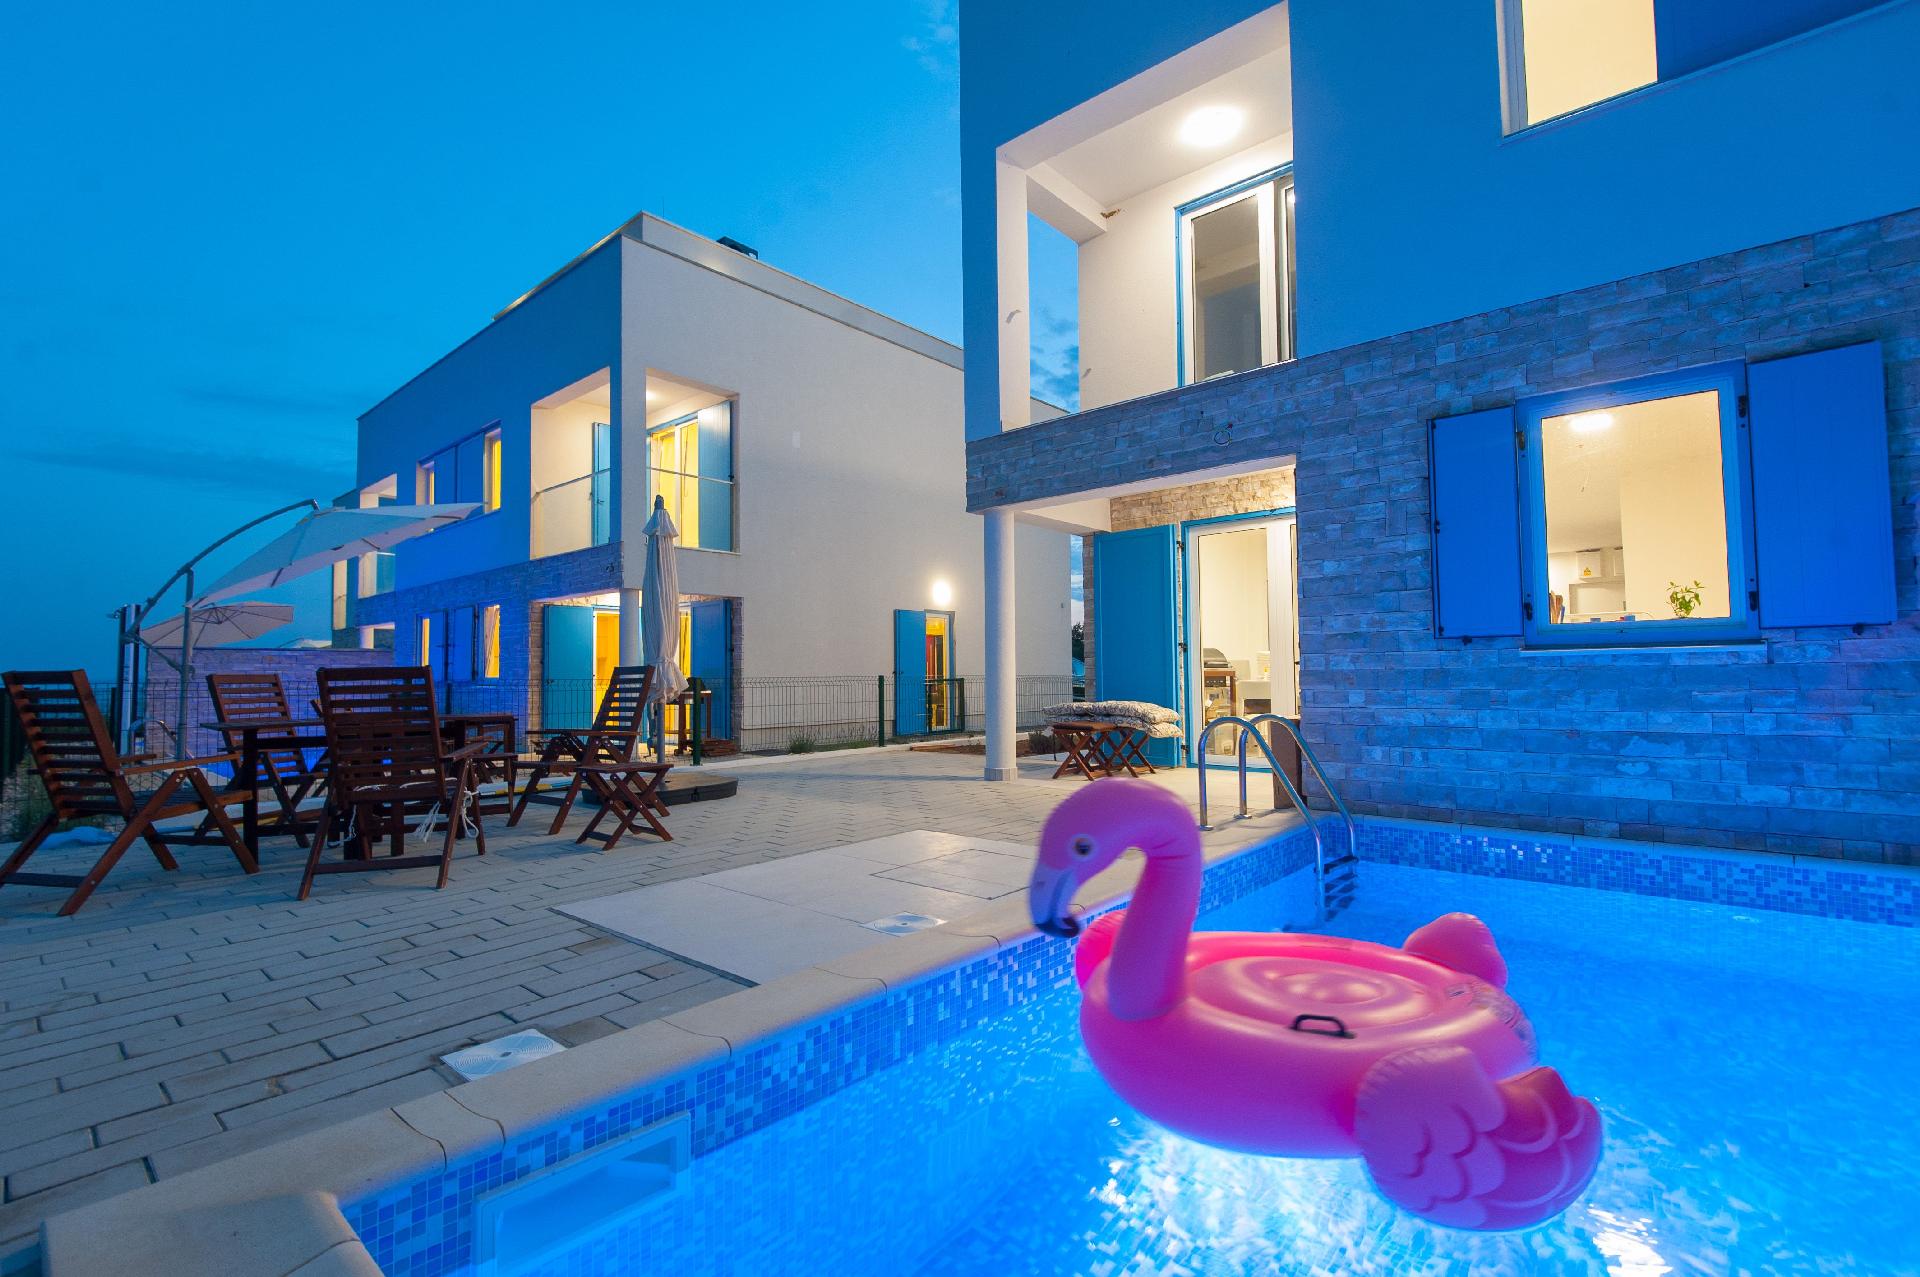 Strandvilla mit beheizbarem Pool und Meerblick, nu Ferienhaus in Europa